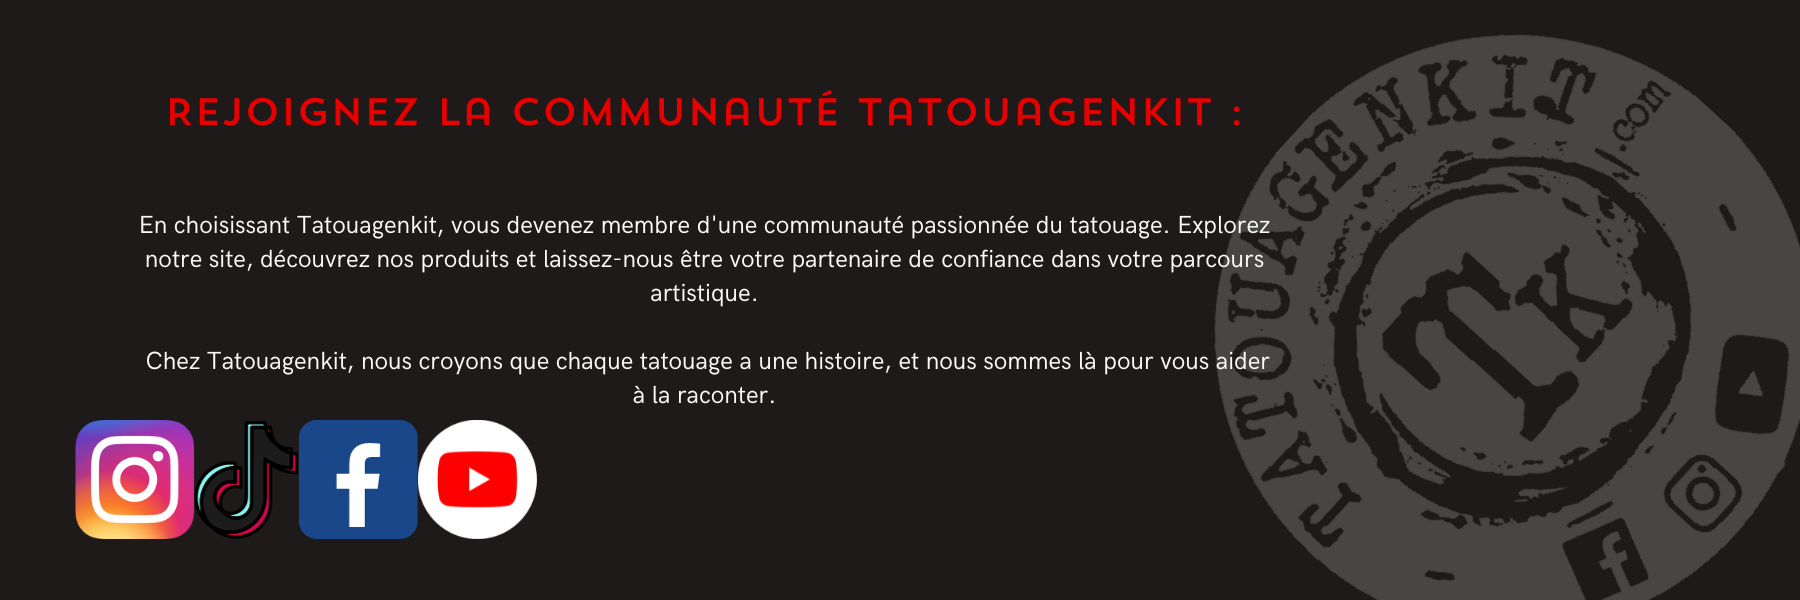 Rejoignez la Communauté Tatouagenkit :En choisissant Tatouagenkit, vous devenez membre d'une communauté passionnée du tatouage. Explorez notre site, découvrez nos produits et laissez-nous être votre partenaire de confiance dans votre parcours artistique.   Chez Tatouagenkit, nous croyons que chaque tatouage a une histoire, et nous sommes là pour vous aider à la raconter.